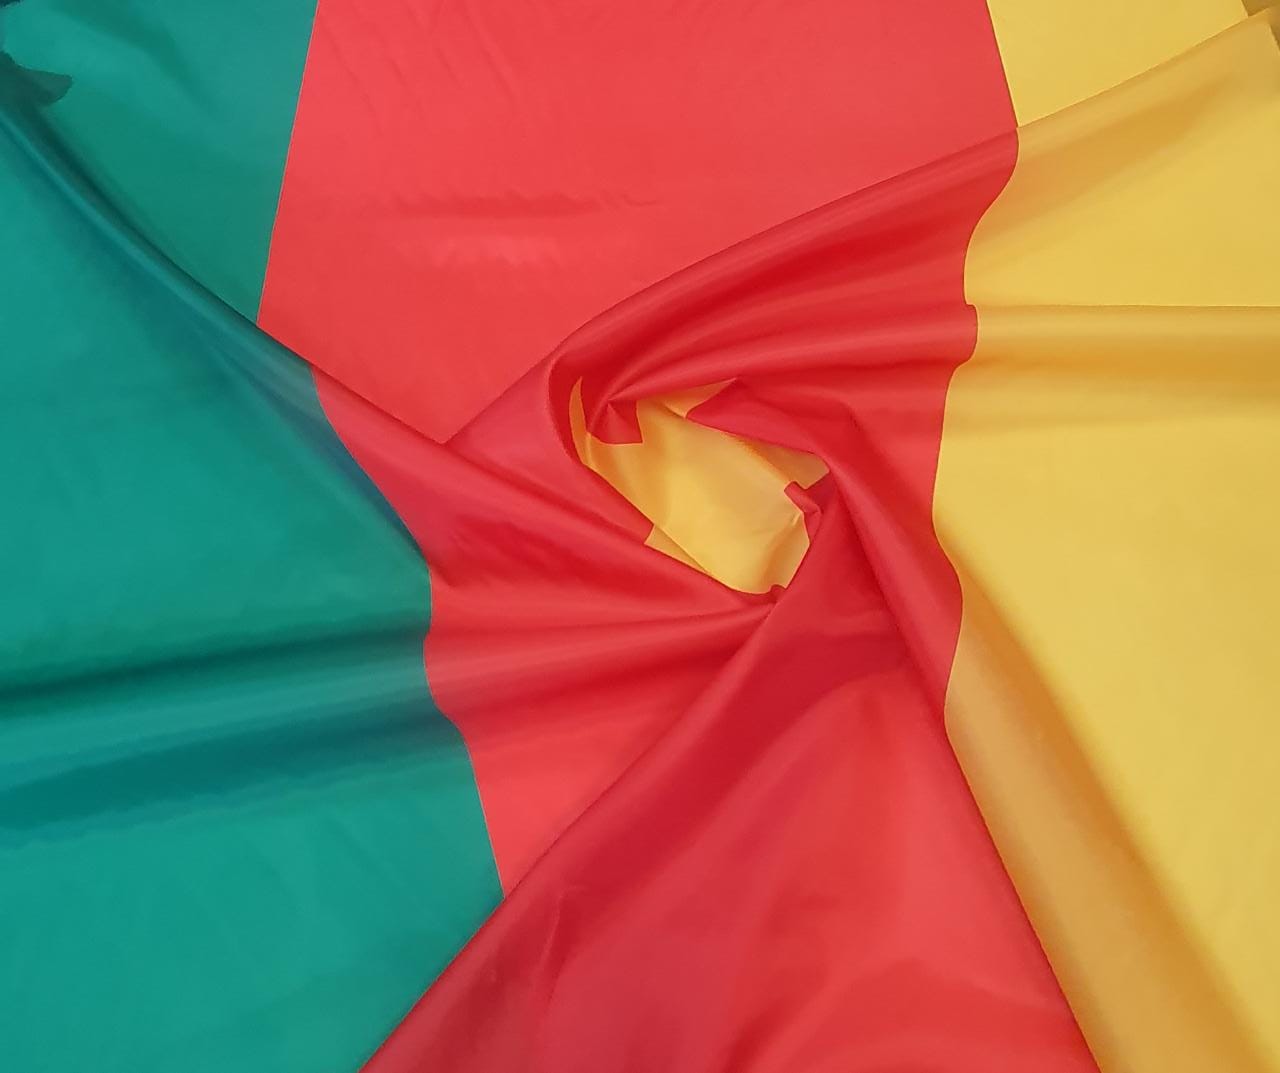 Bandeira de Camarões em Faliete